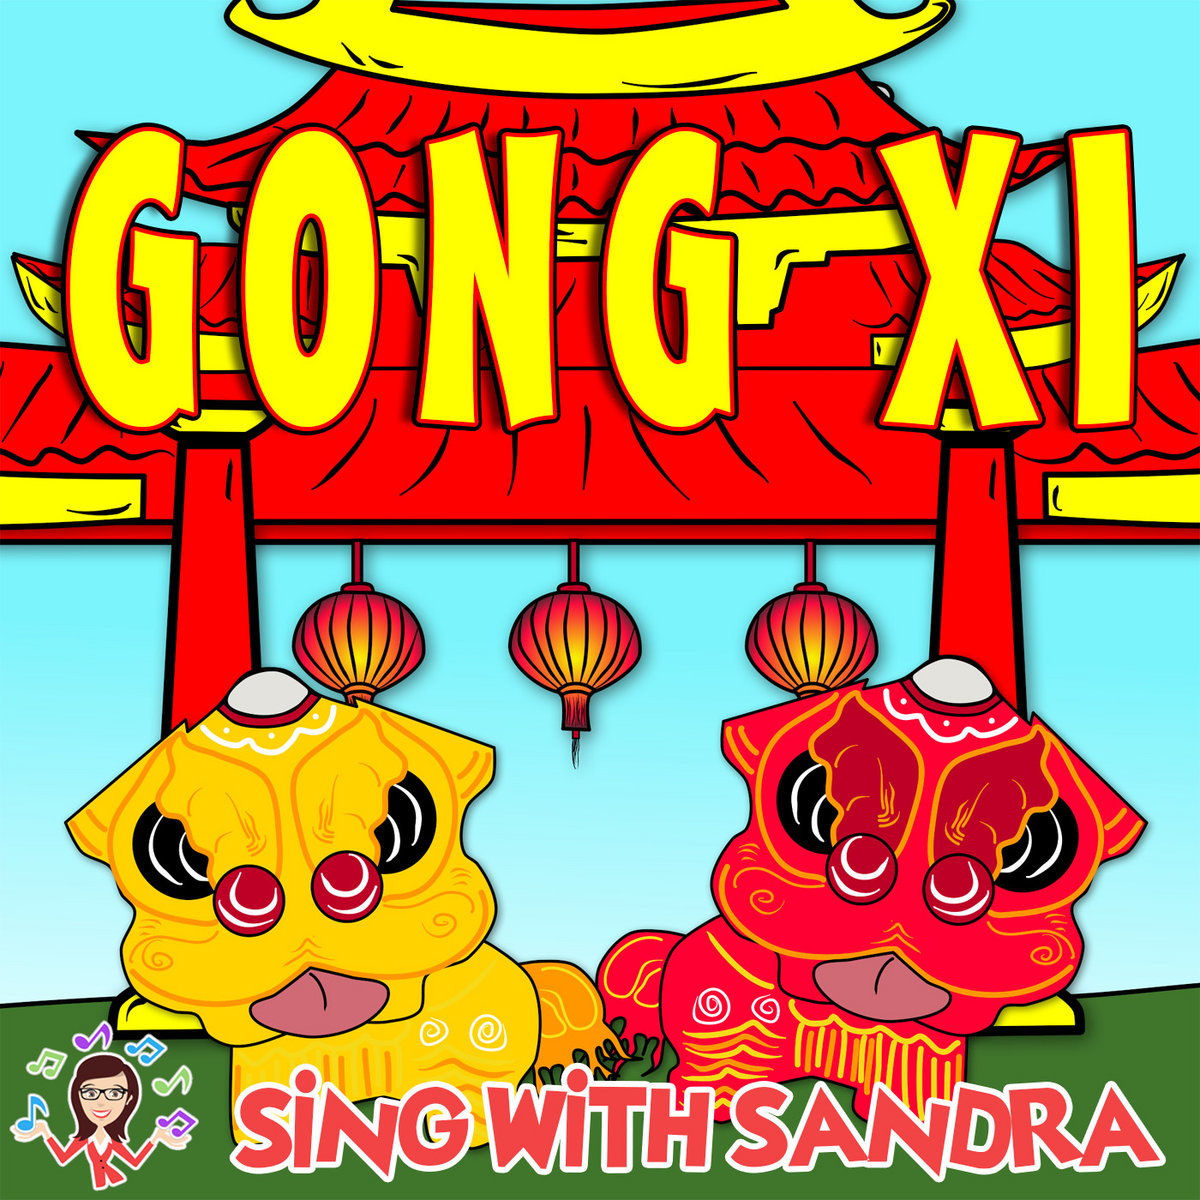 Gongxi Gongxi Song Lyrics